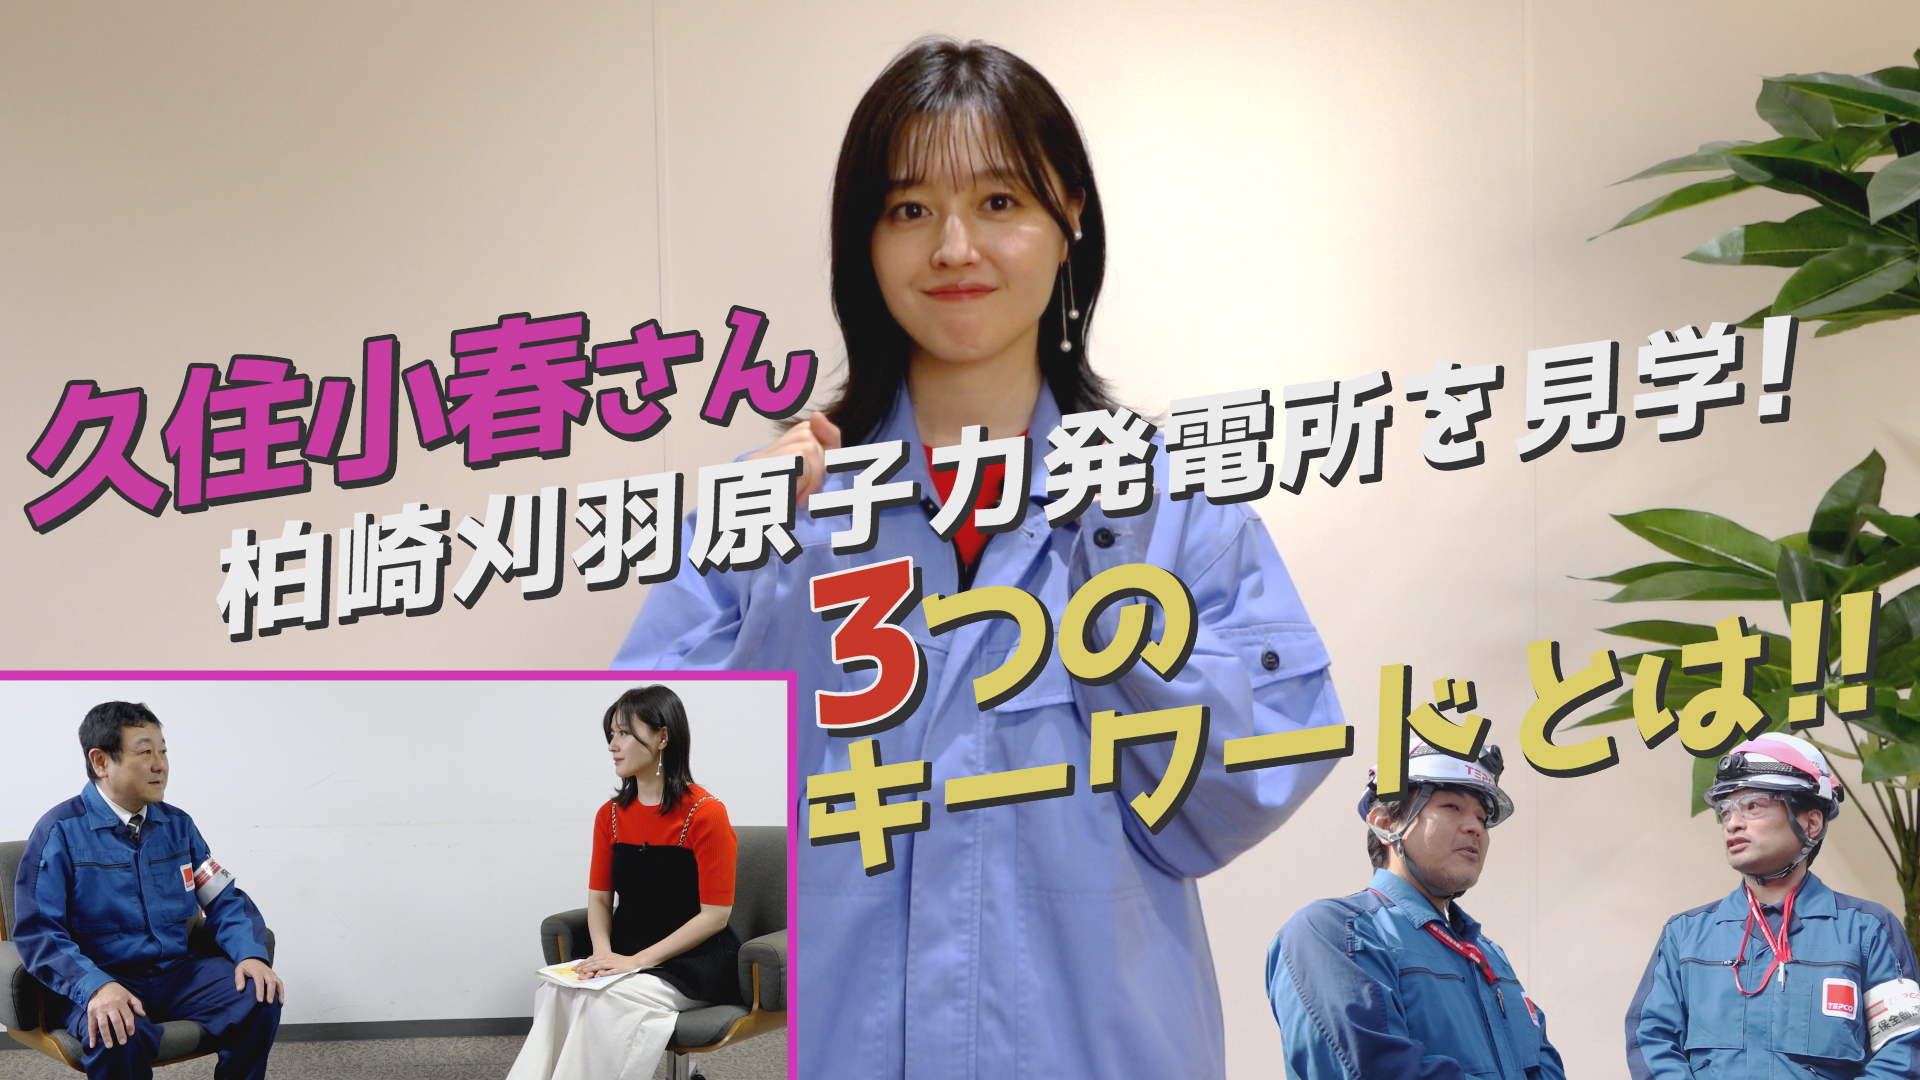 【新着動画】俳優の久住小春さんが柏崎刈羽原子力発電所を見学しました。